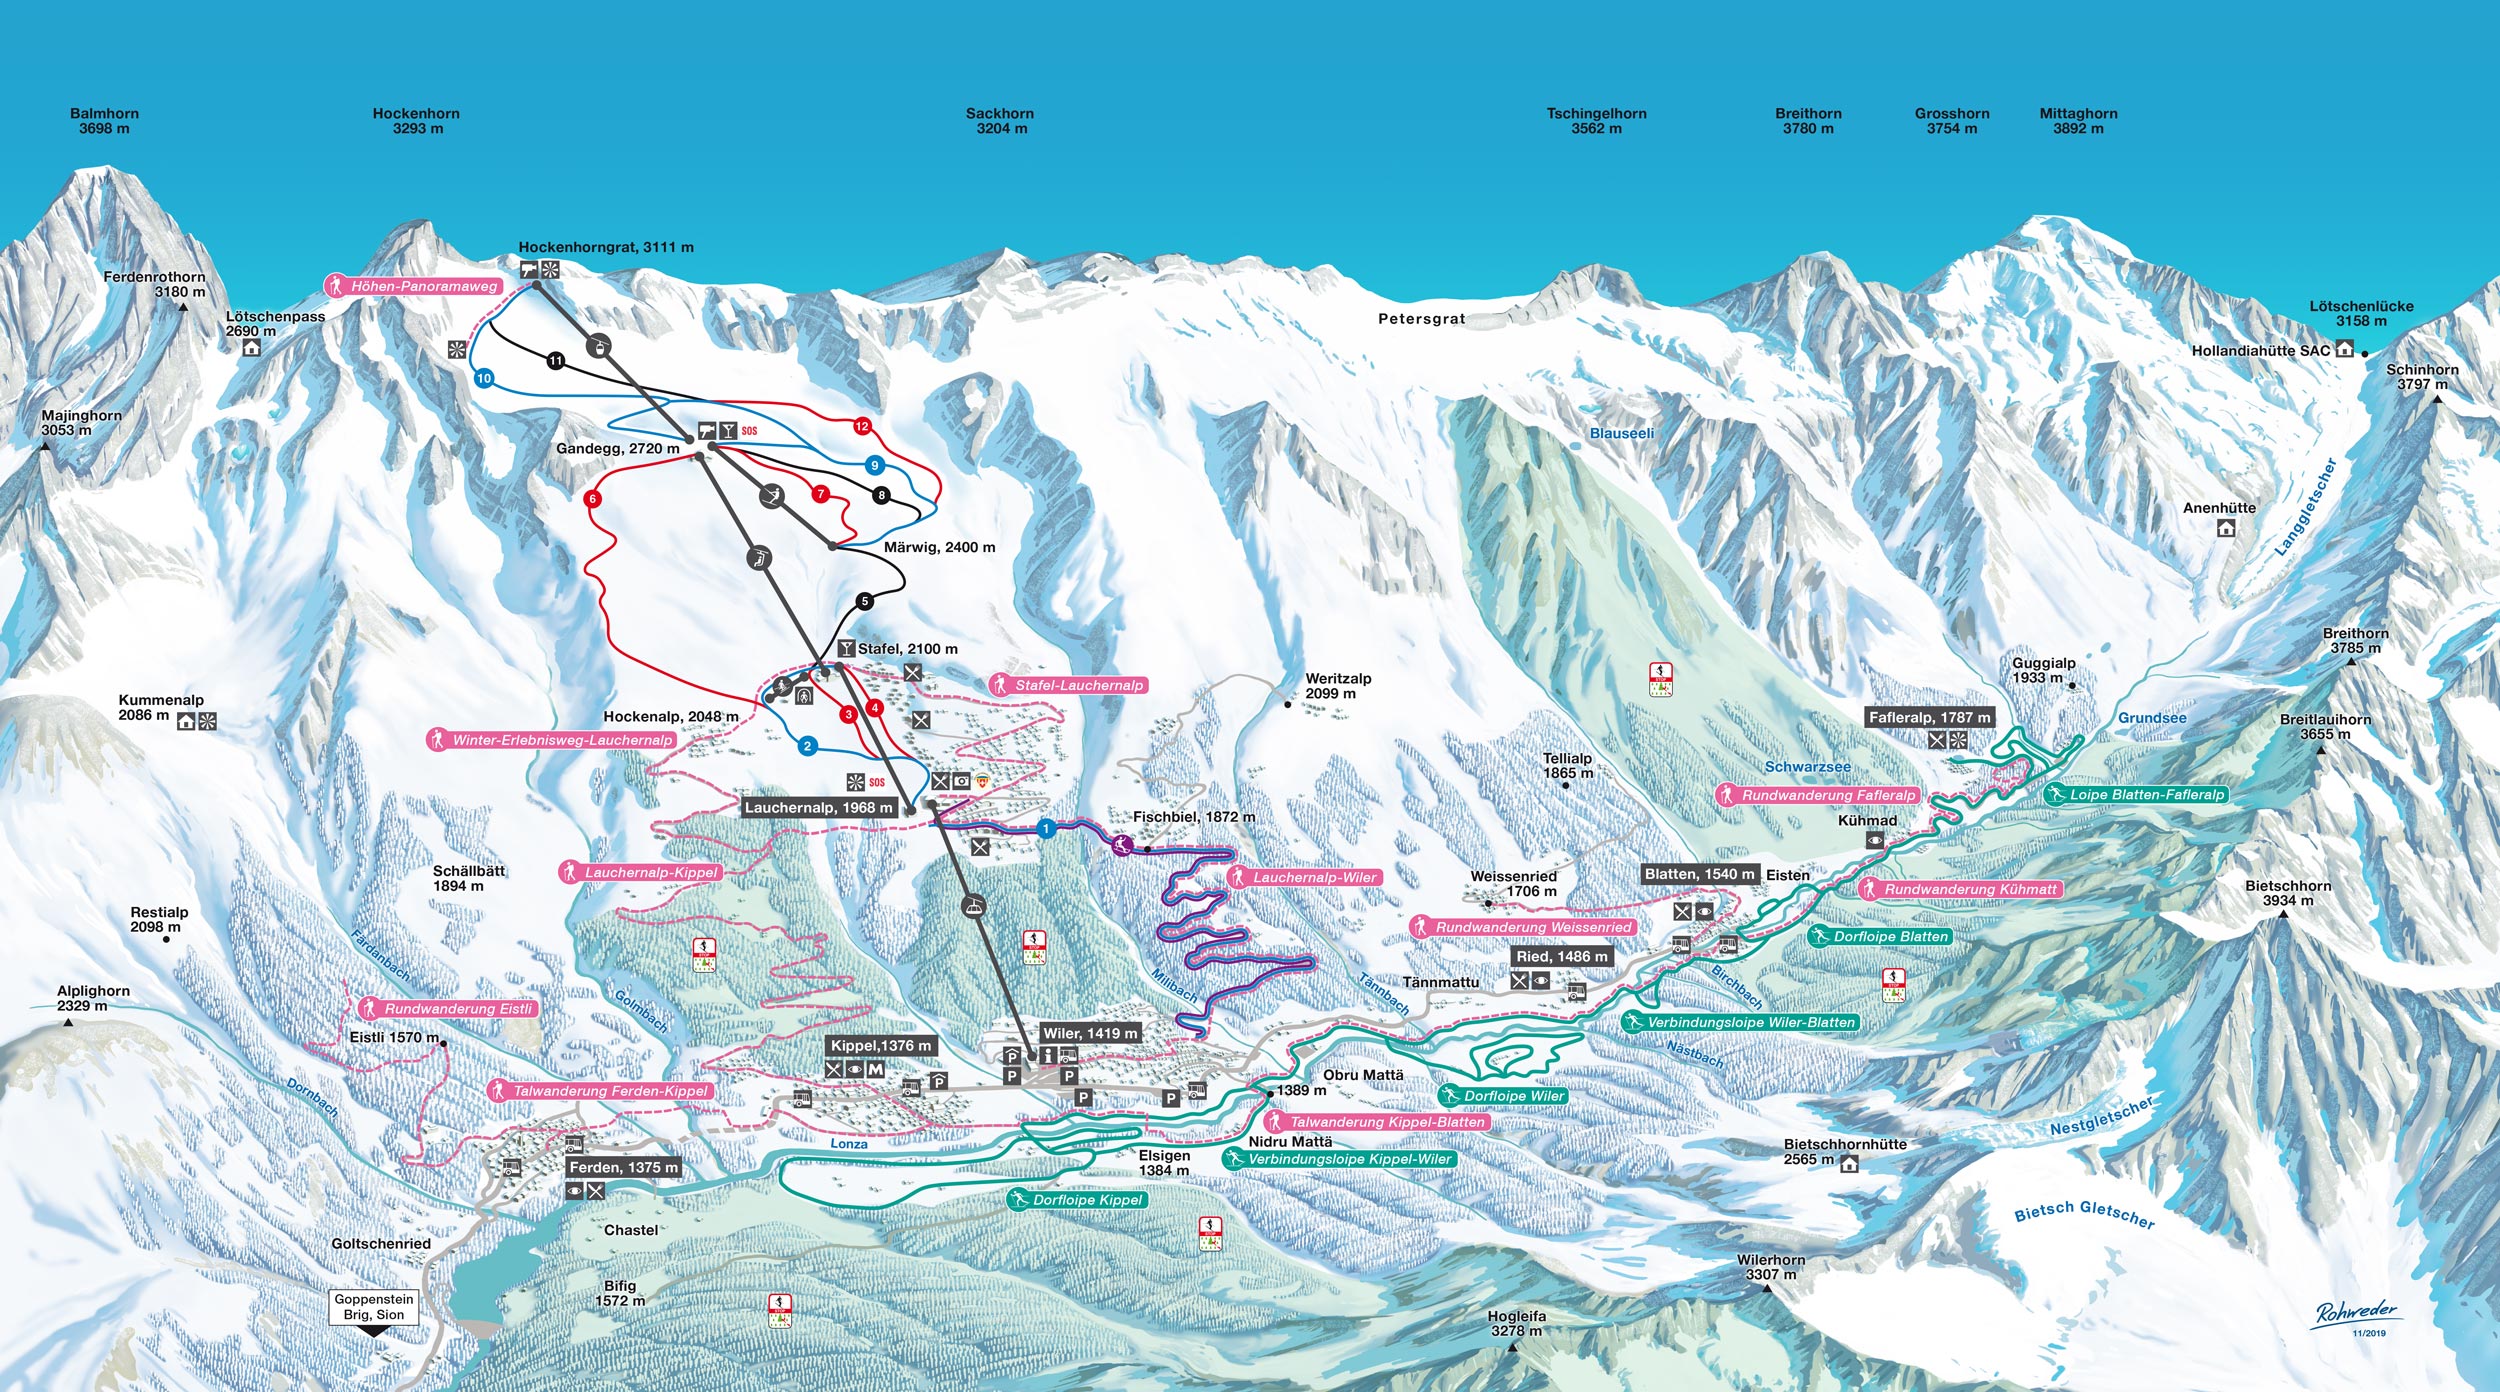 Loetschental Winter Pistenplan Winter Sport Karte Ski Map